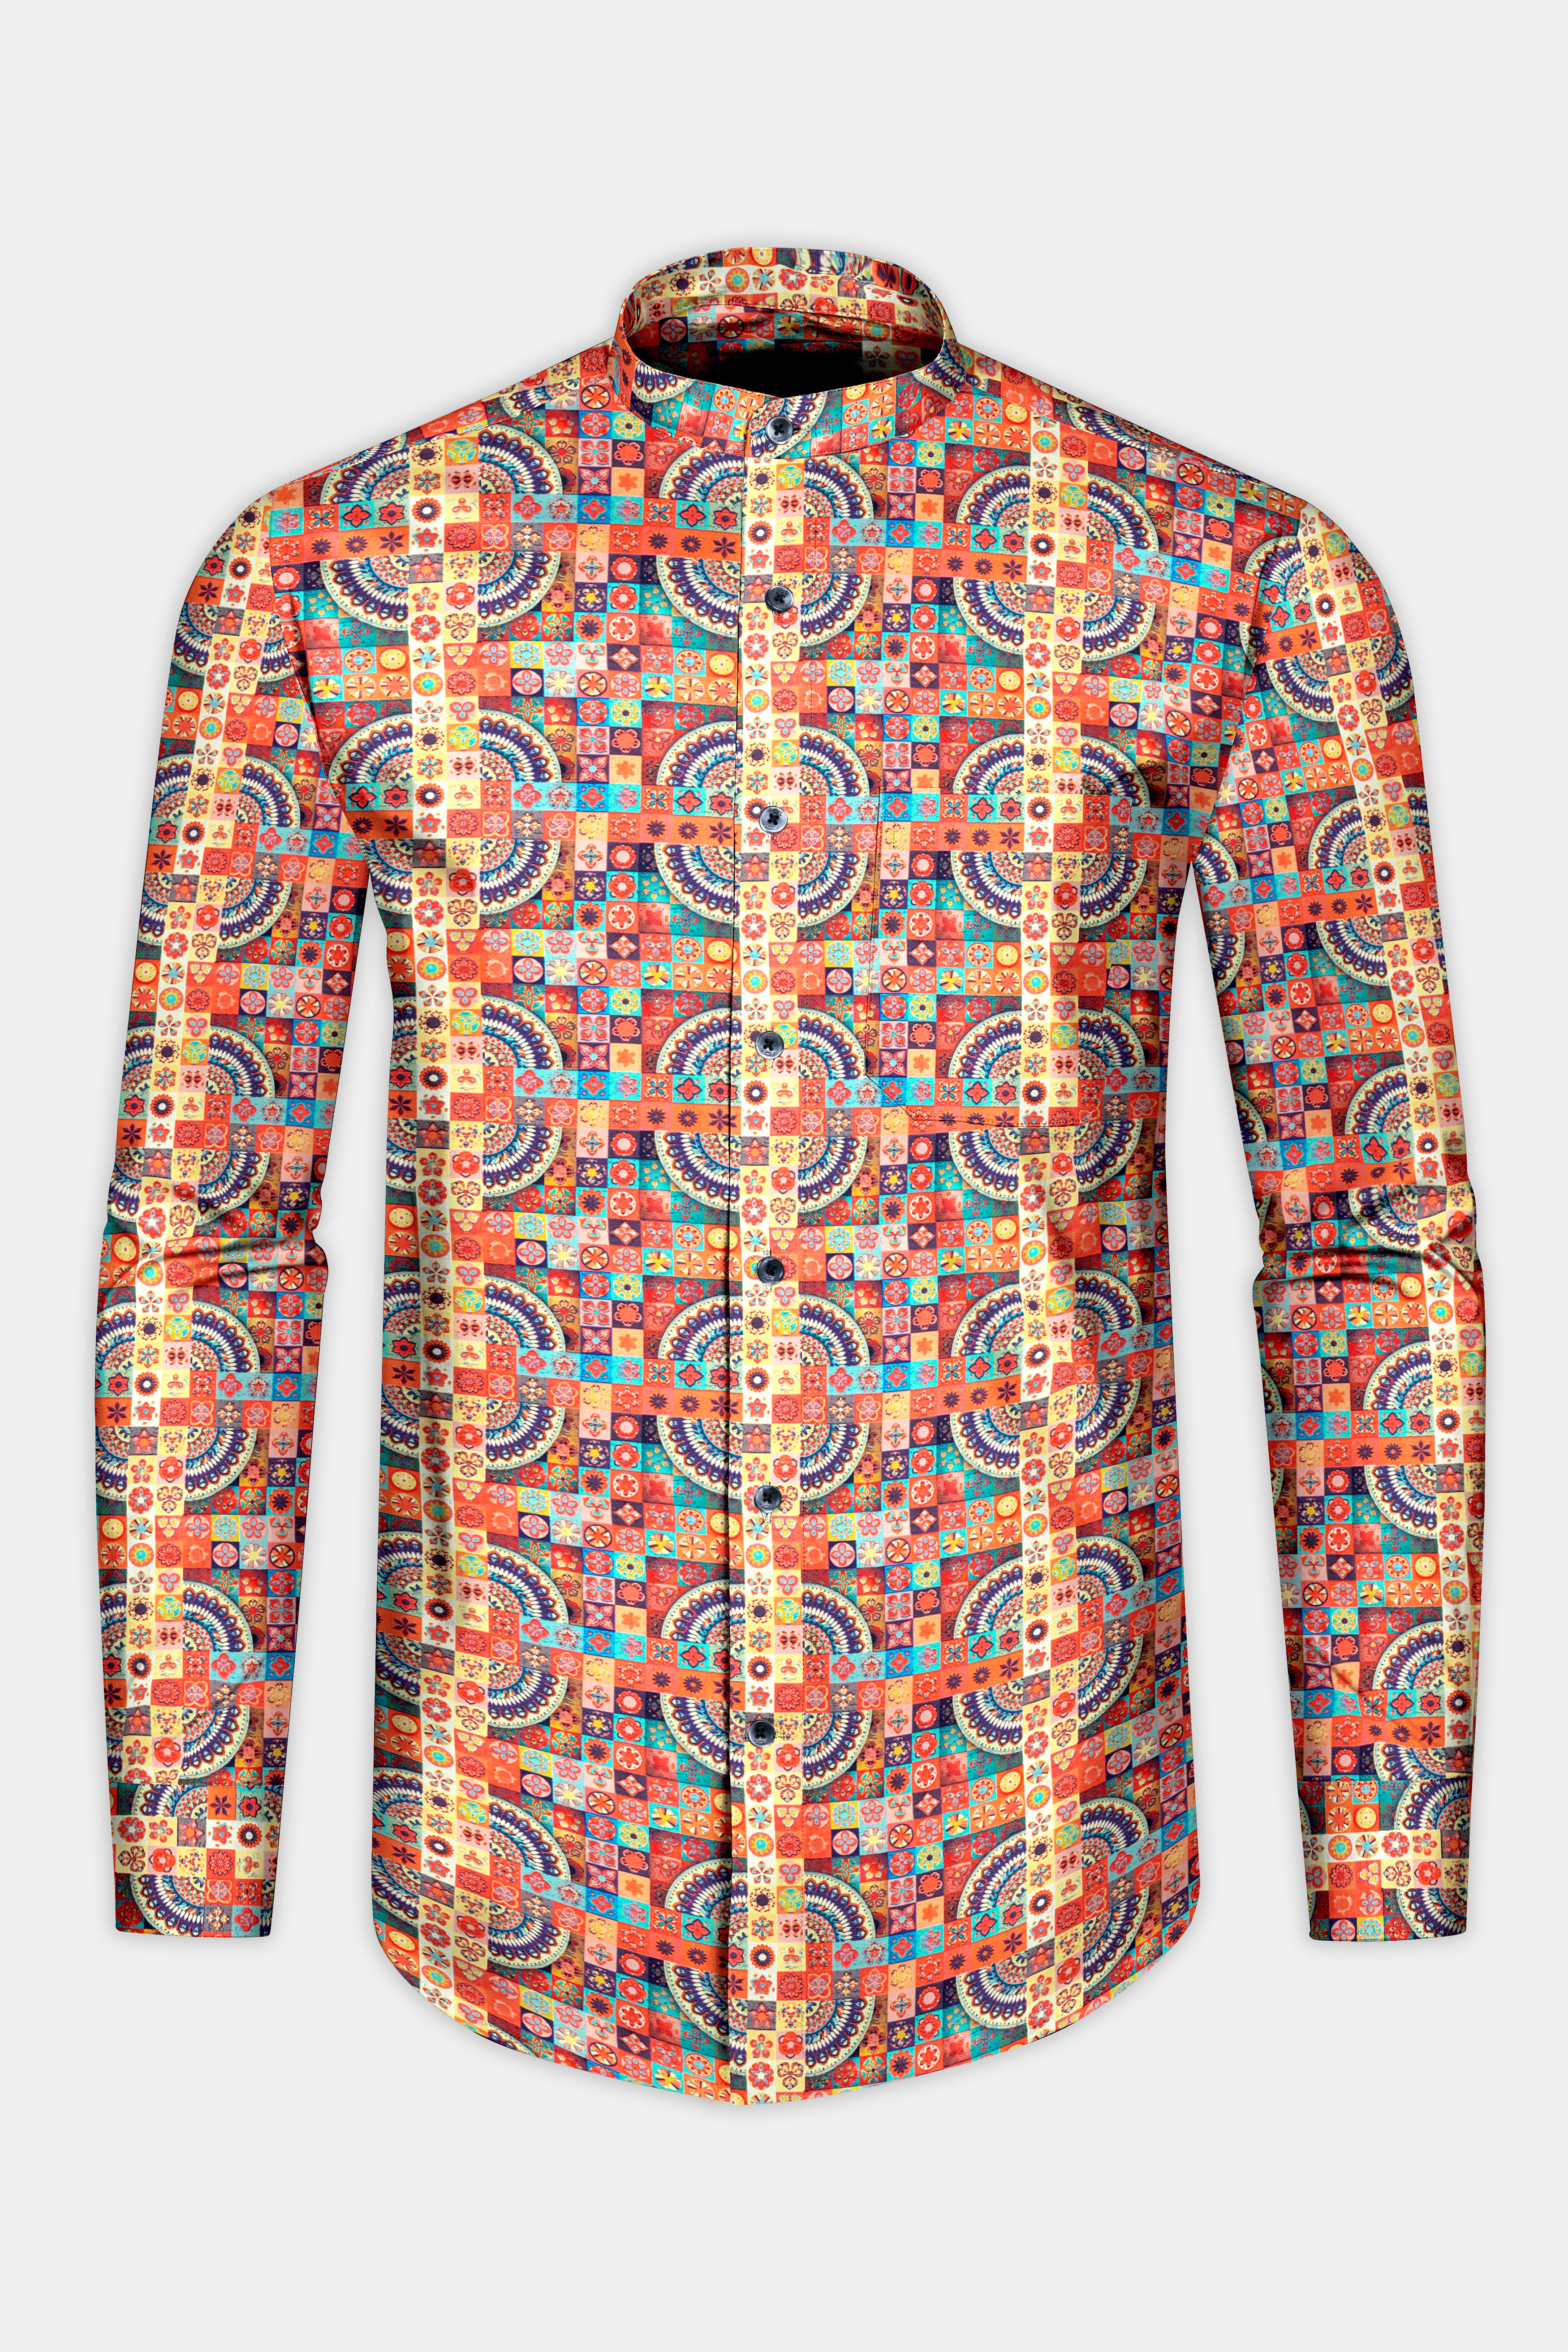 Sunrise Orange Multicolour Geometric Printed Super Soft Premium Cotton Shirt